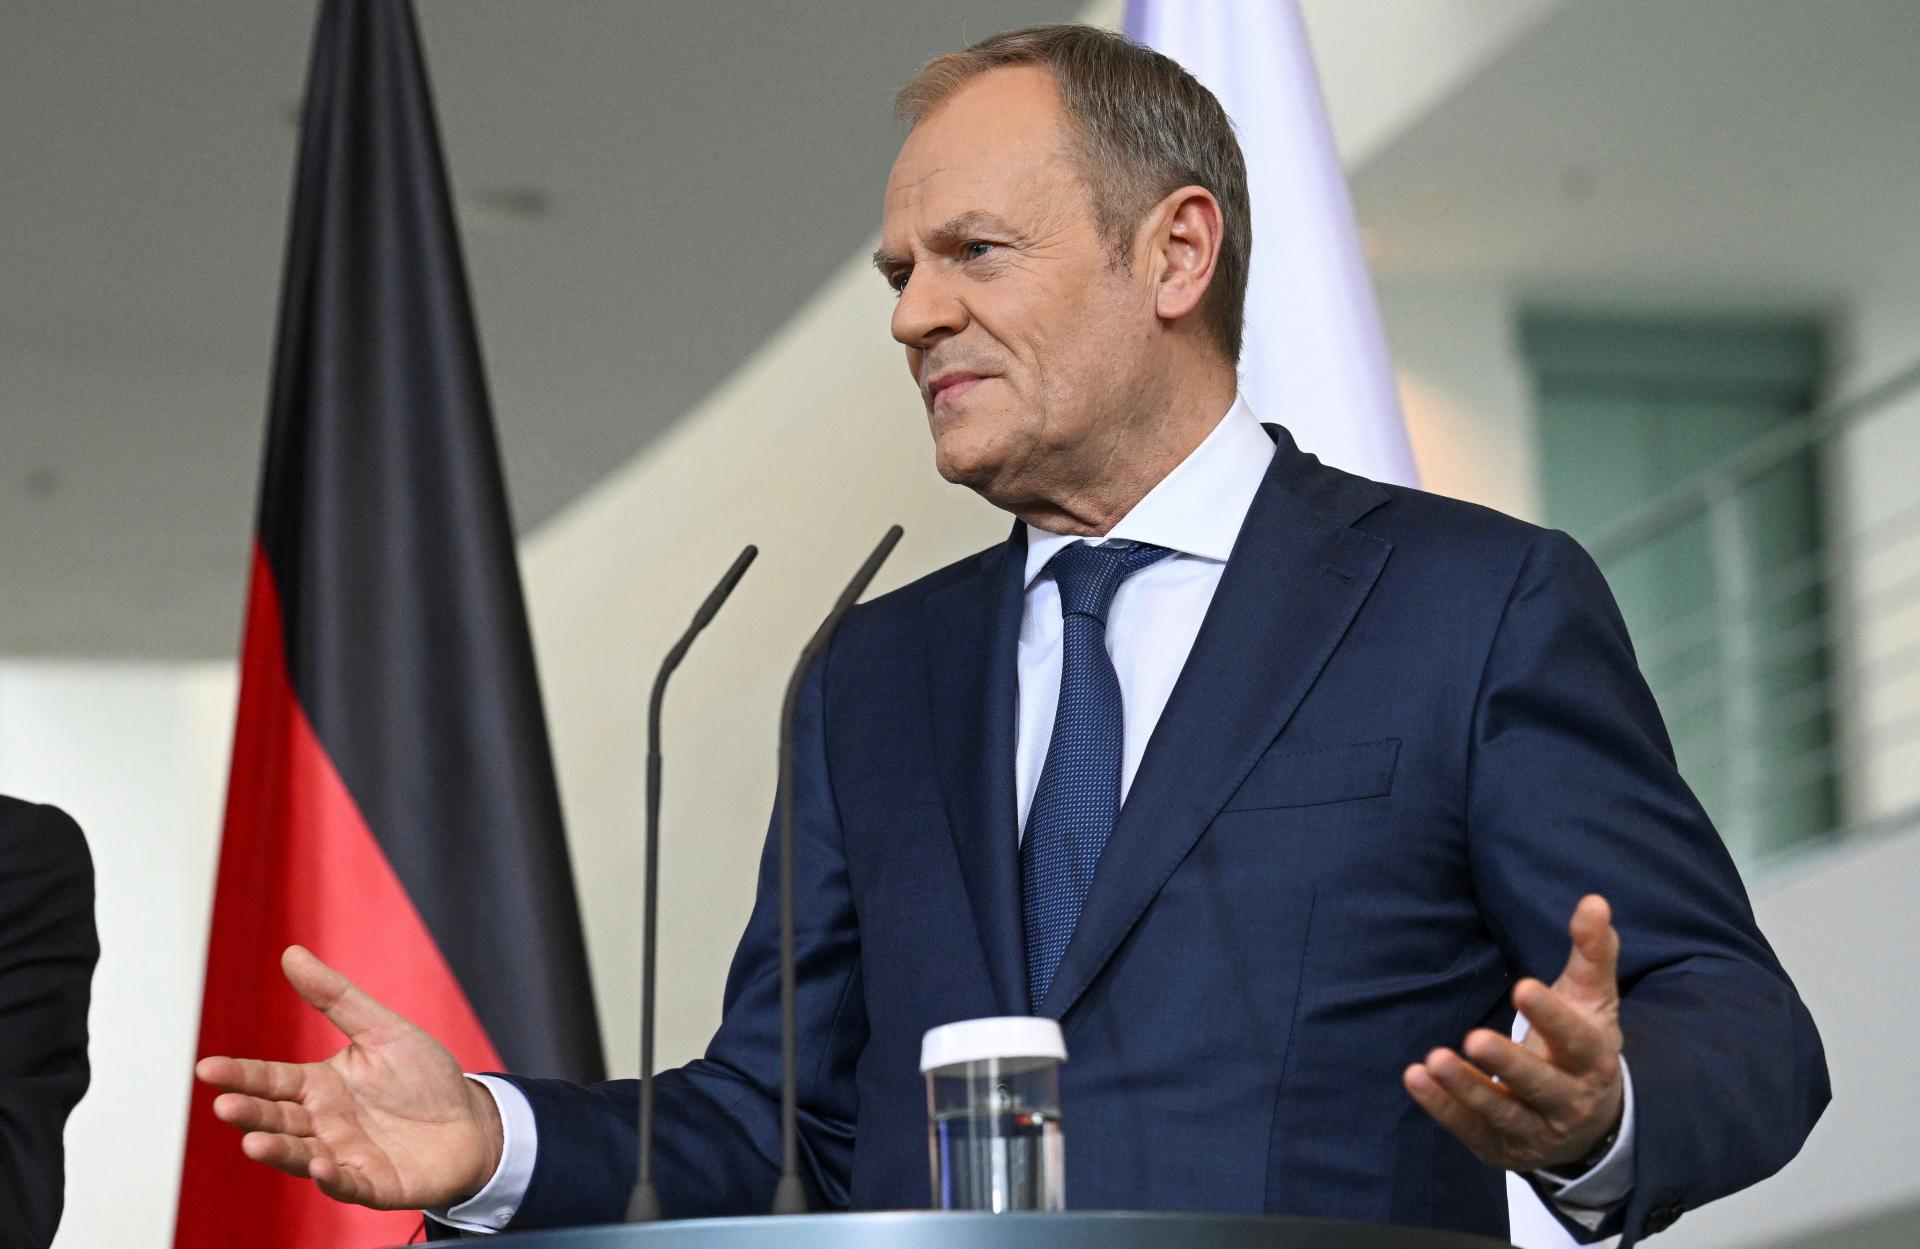 Poľsko, Francúzsko a Nemecko hovoria jedným hlasom, tvrdí Tusk. Nezhody označil ako 